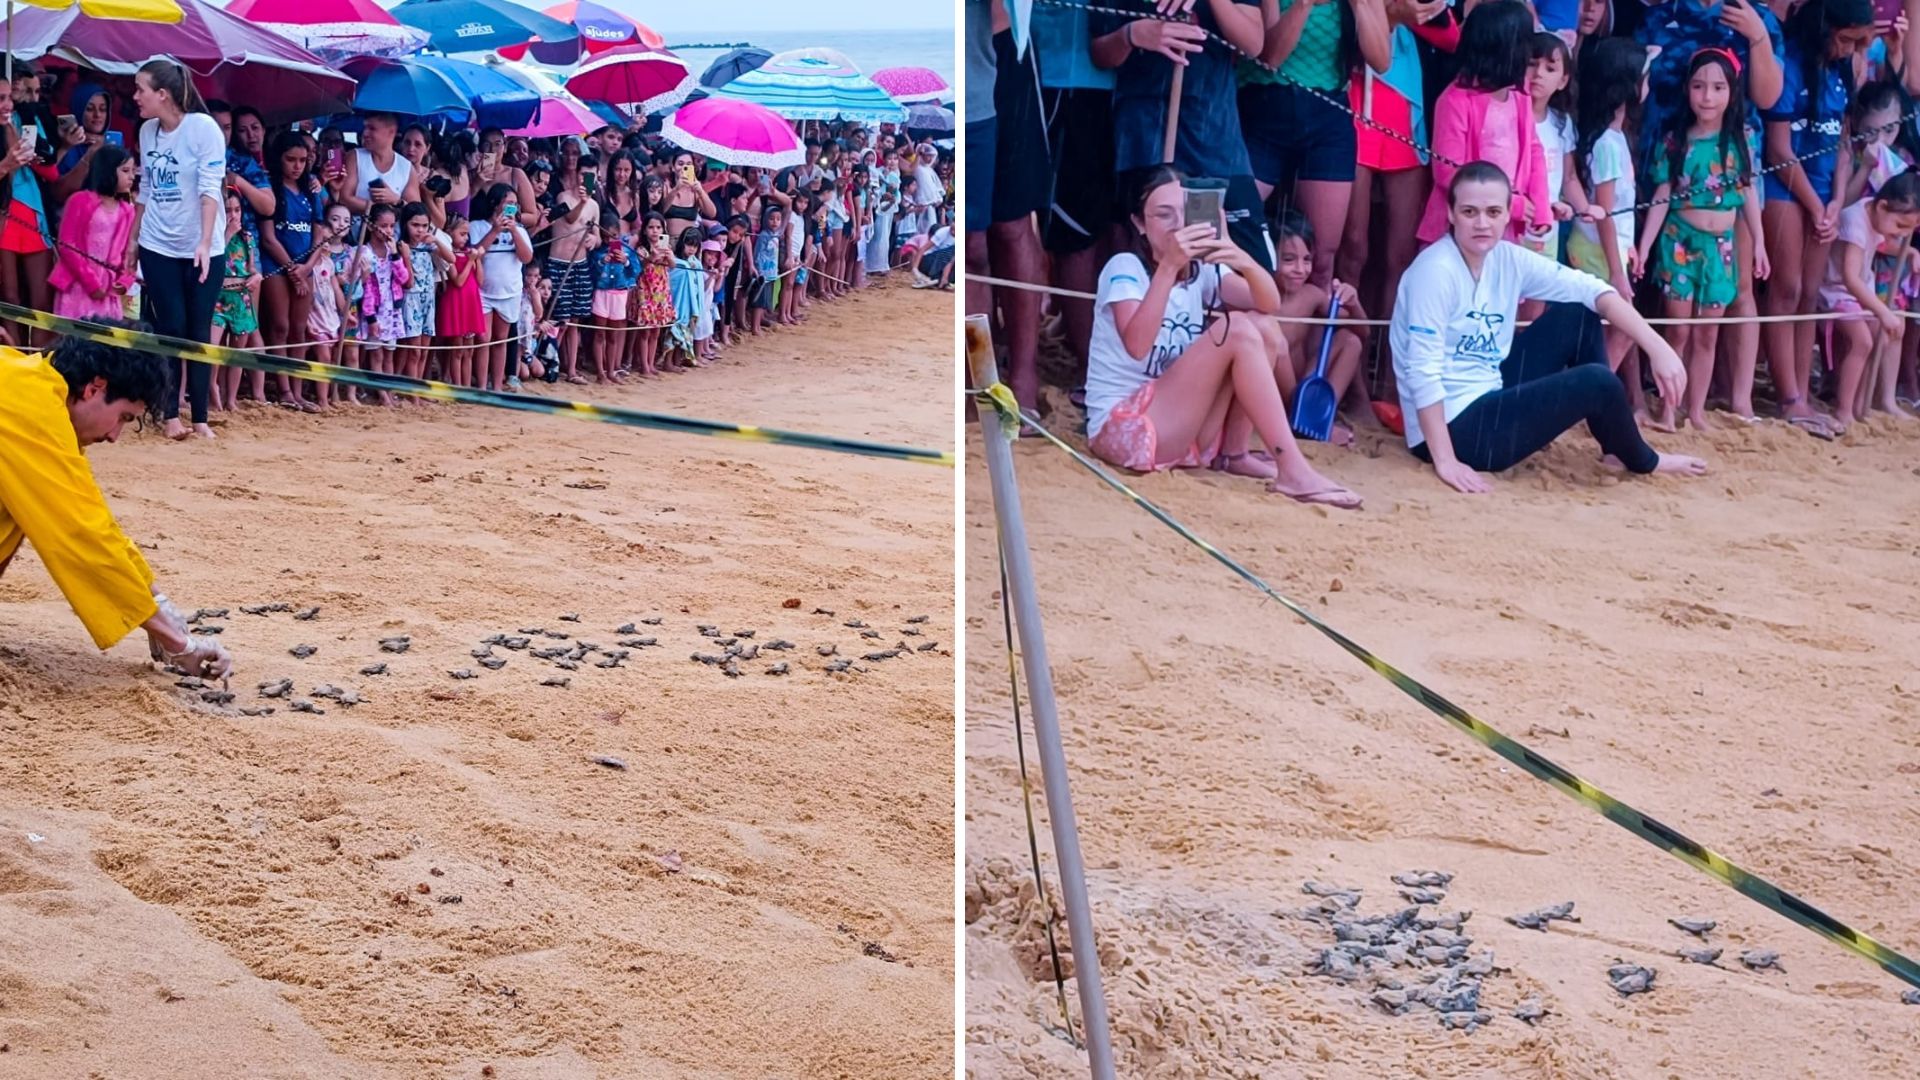 Na tarde de quarta-feira (3), a Praia de Guanabara ficou repleta de pessoas; nem mesmo a chuva desanimou o público, que foi ao local conferir centenas de tartarugas recém-nascidas indo para o bar